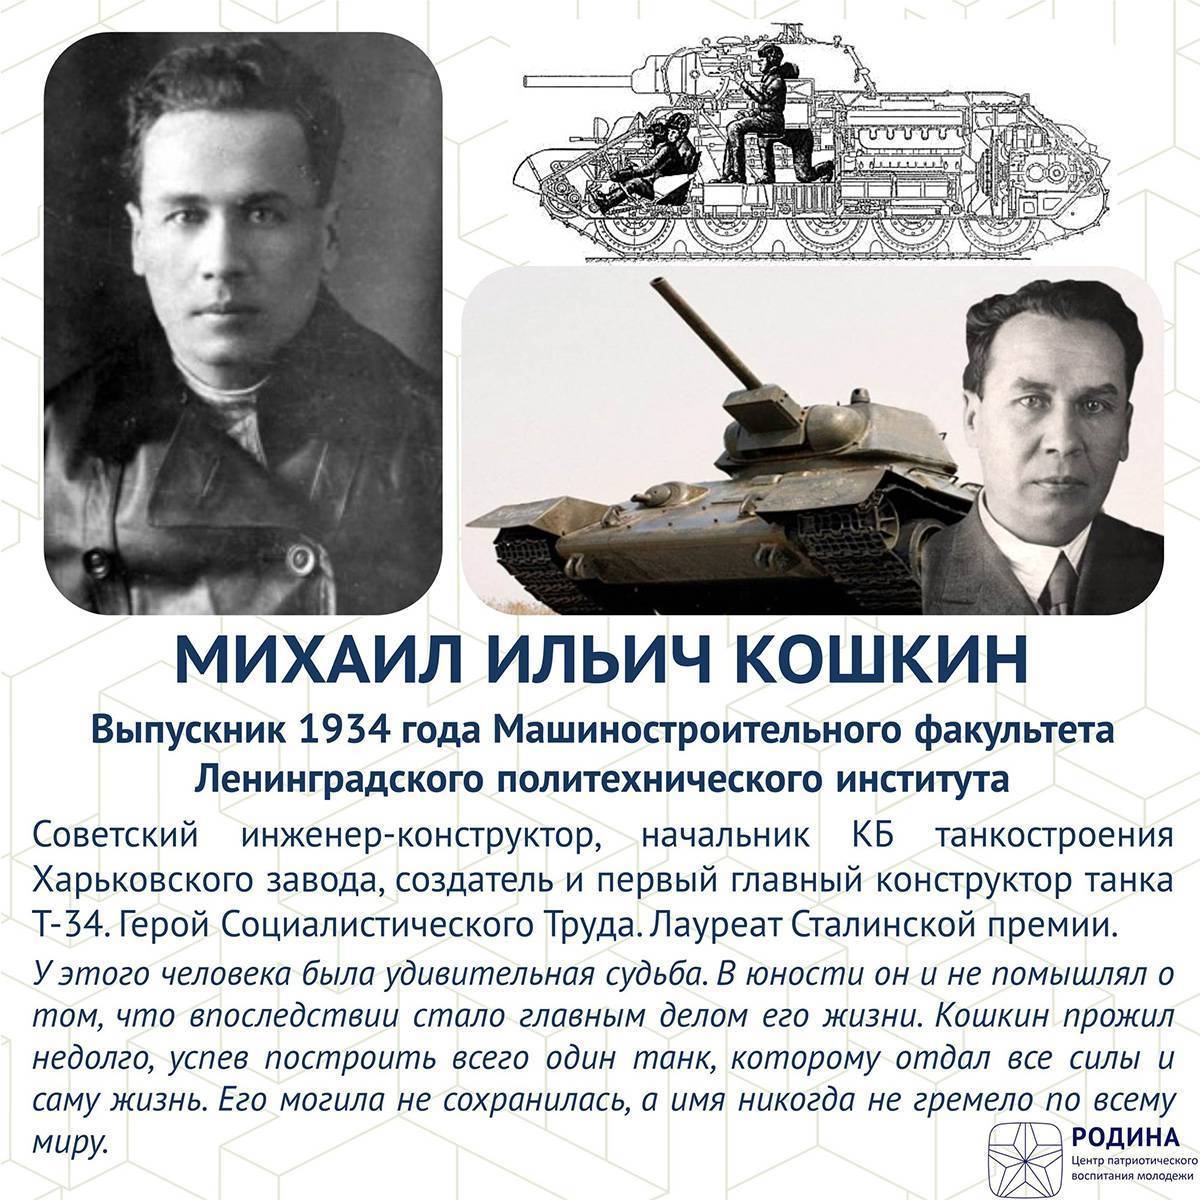 Главное дело конструктора кошкина. танк т-34 стоил жизни его создателю | 42.tut.by